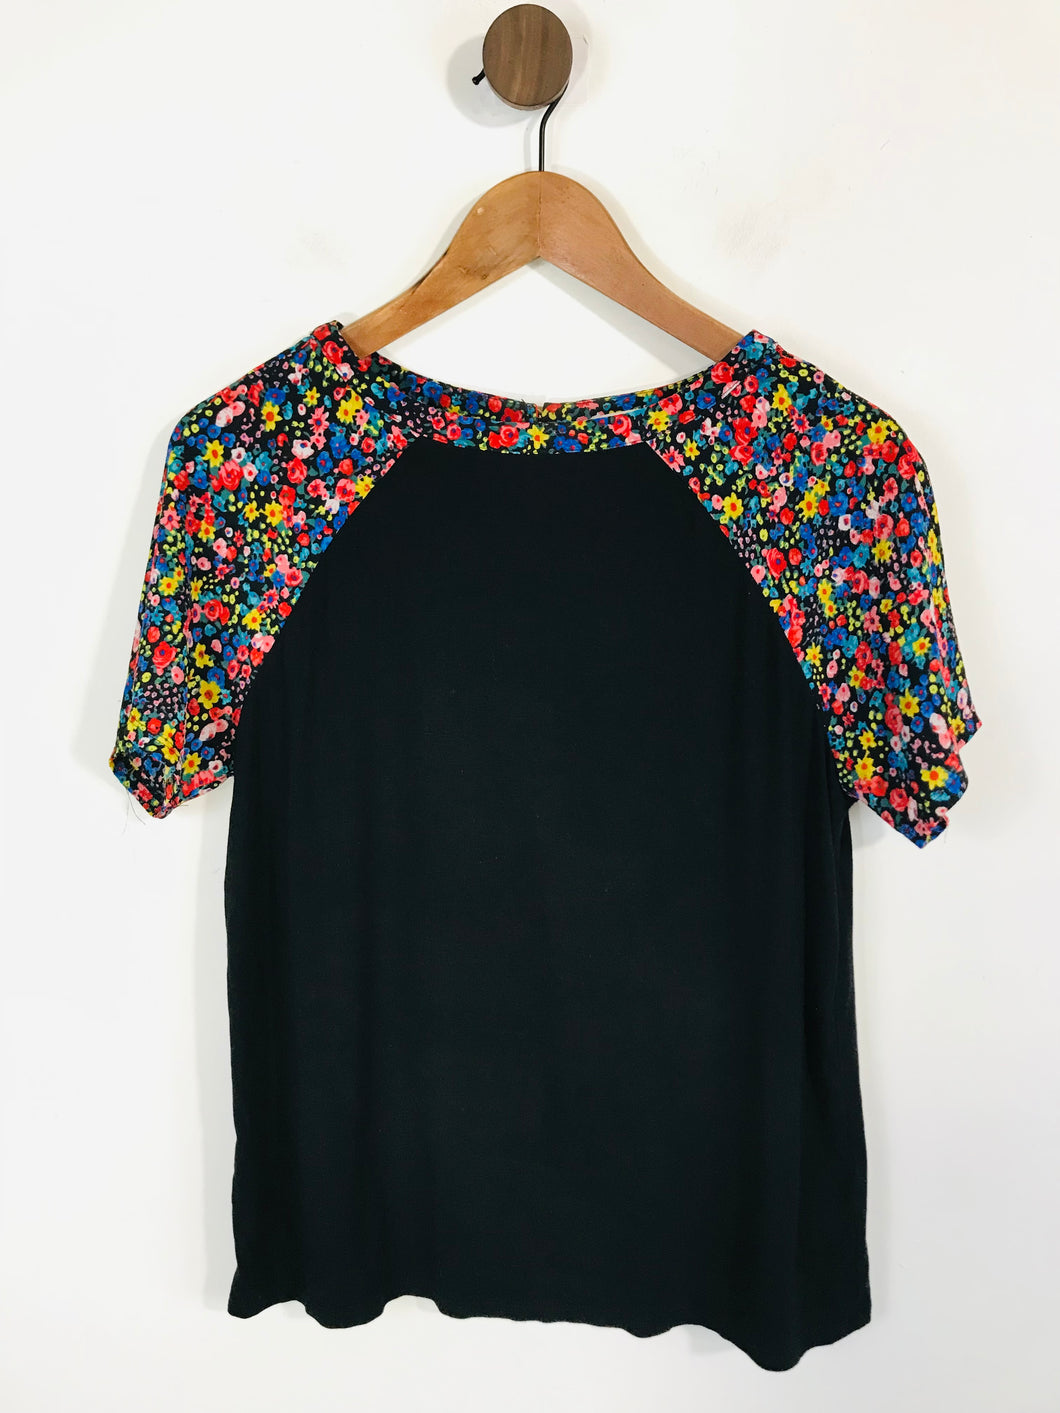 Oasis Women's Colour Block Floral T-Shirt | M UK10-12 | Black